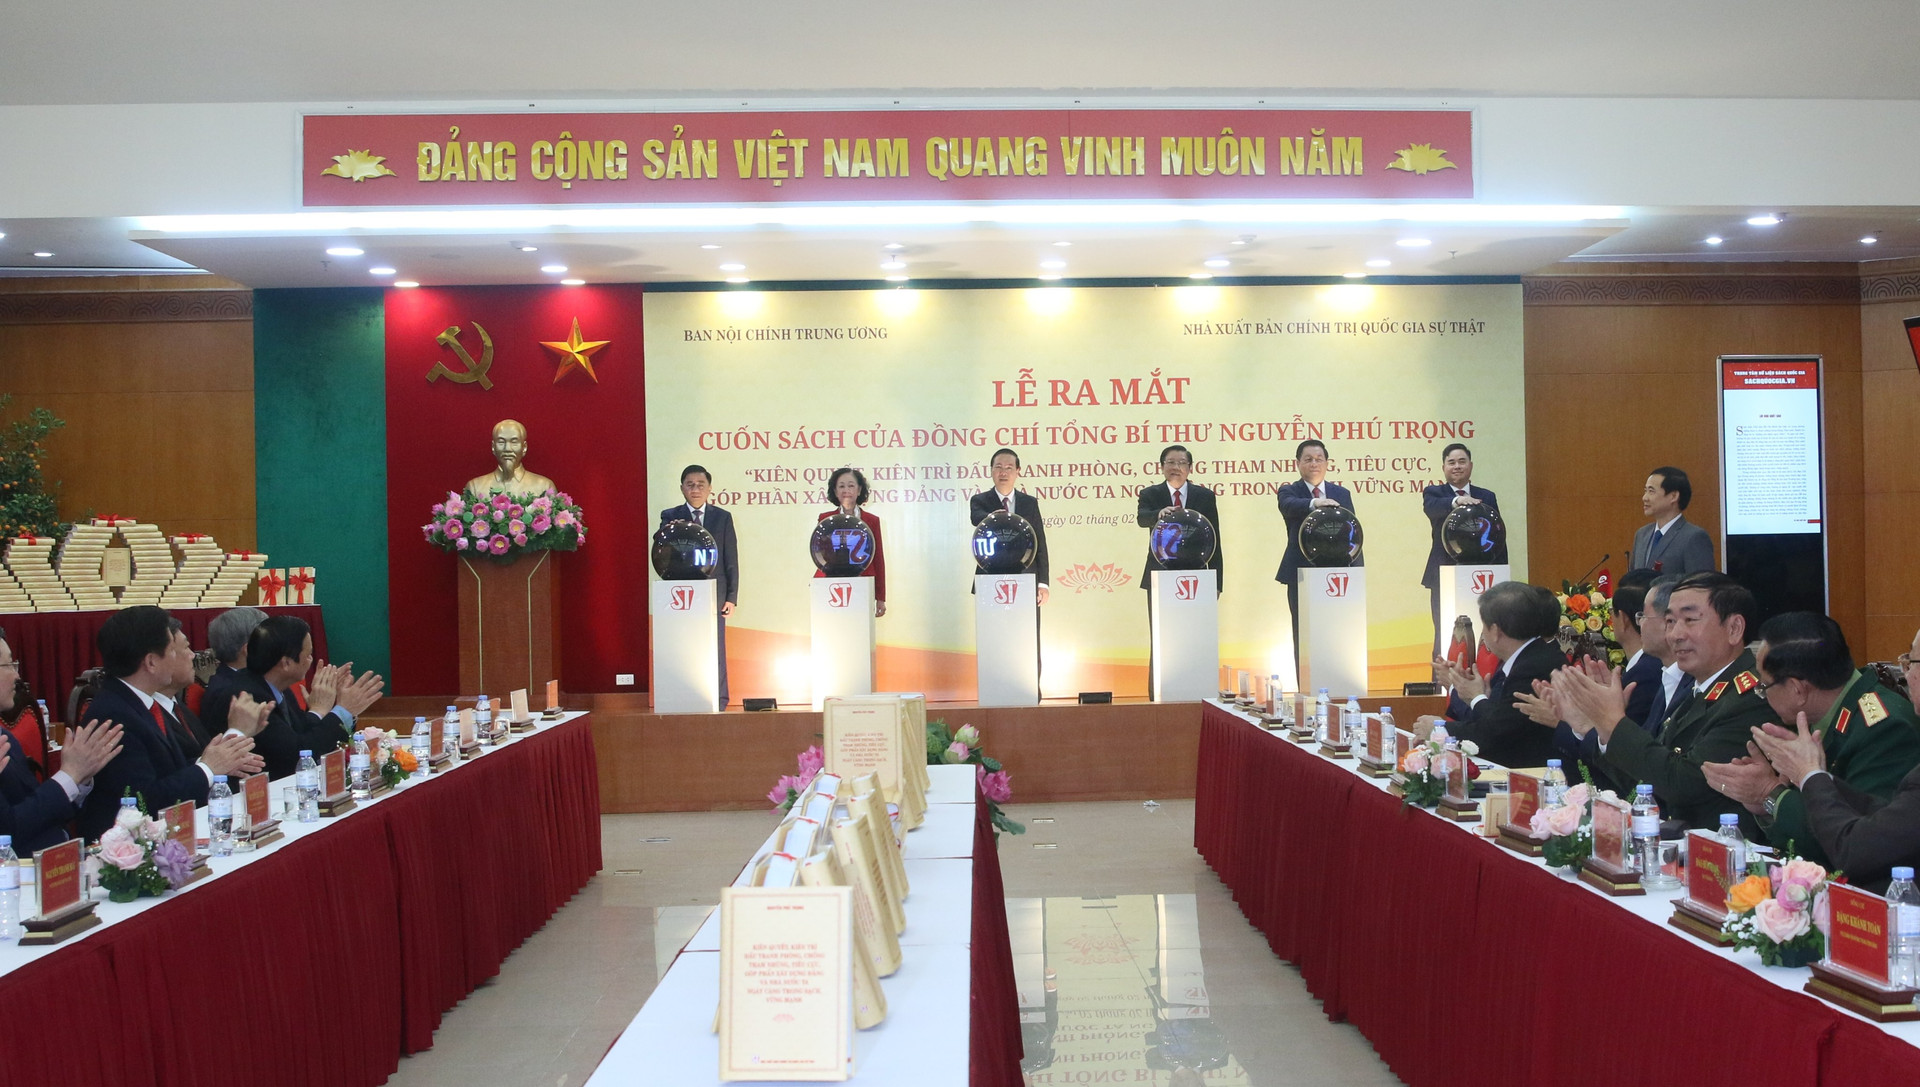 Chính thức ra mắt cuốn sách về phòng, chống tham nhũng của Tổng Bí thư Nguyễn Phú Trọng